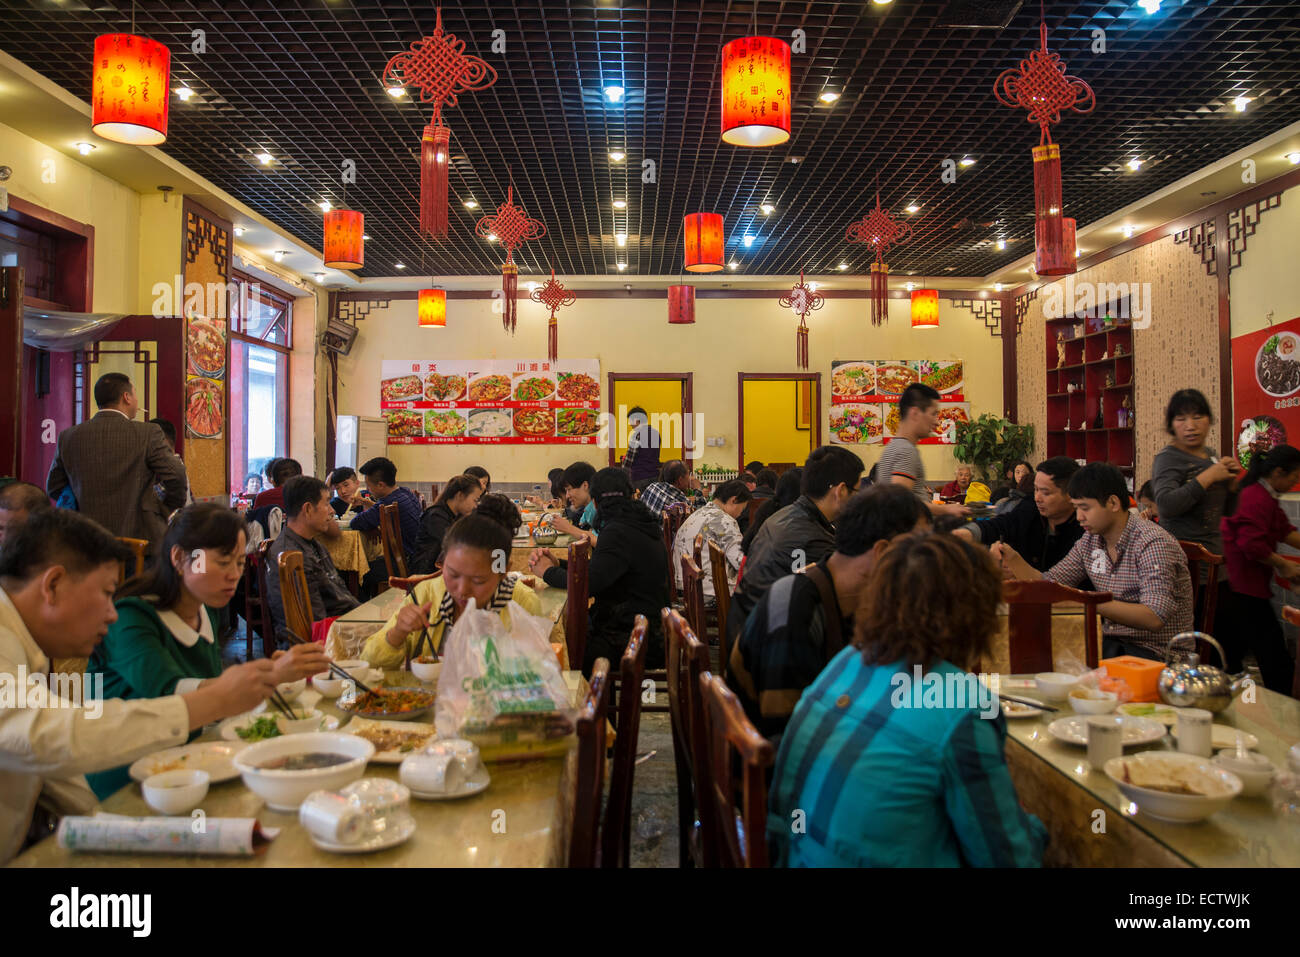 Interior of Chinese restaurant, Beijing Stock Photo